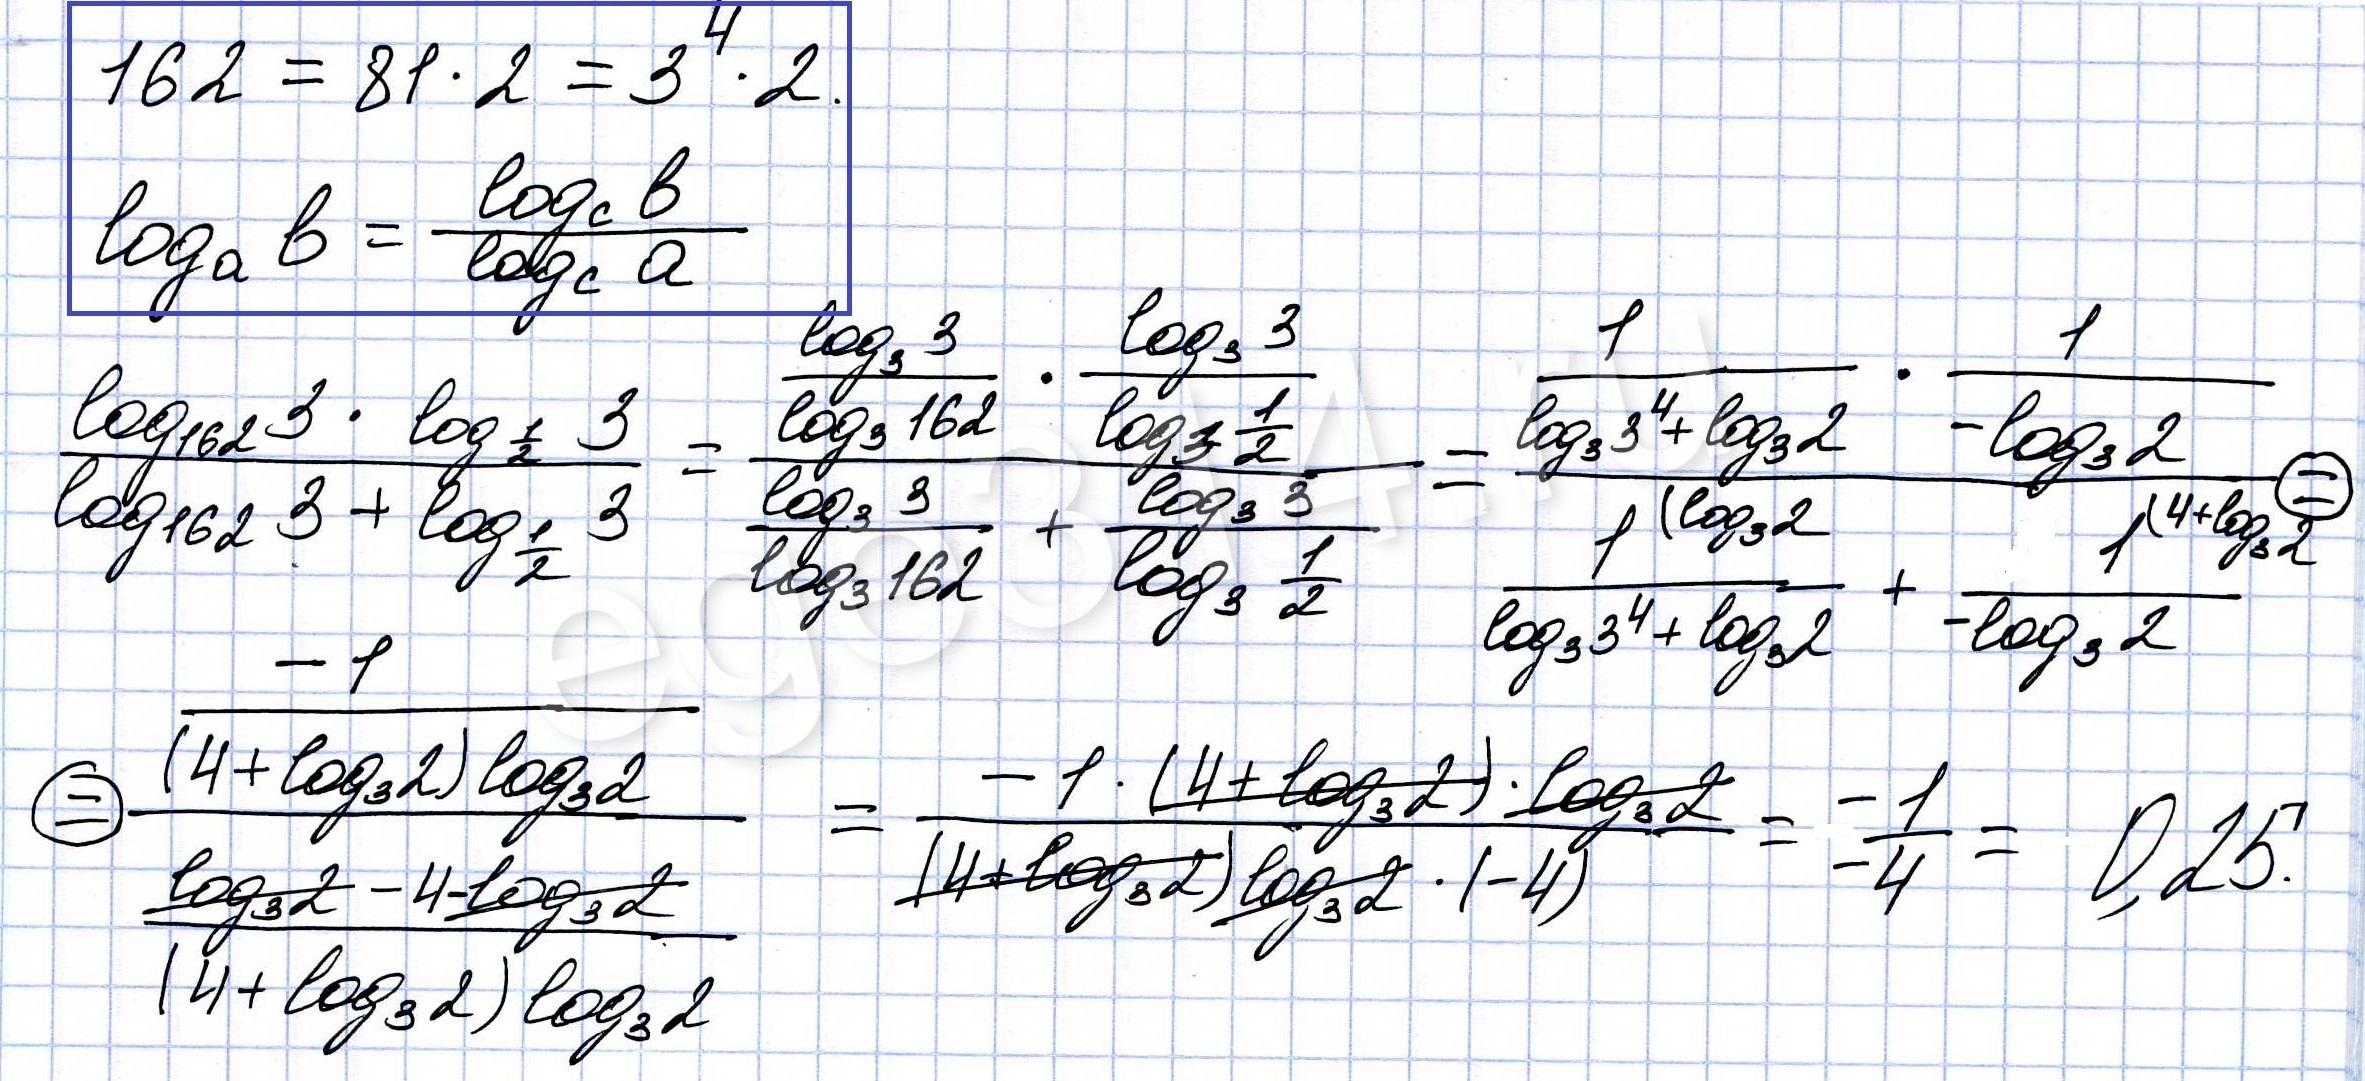 Решение №549 Найдите значение выражения (log(162)3*log(1/2)3)/(log162 3+log(1/2)3)